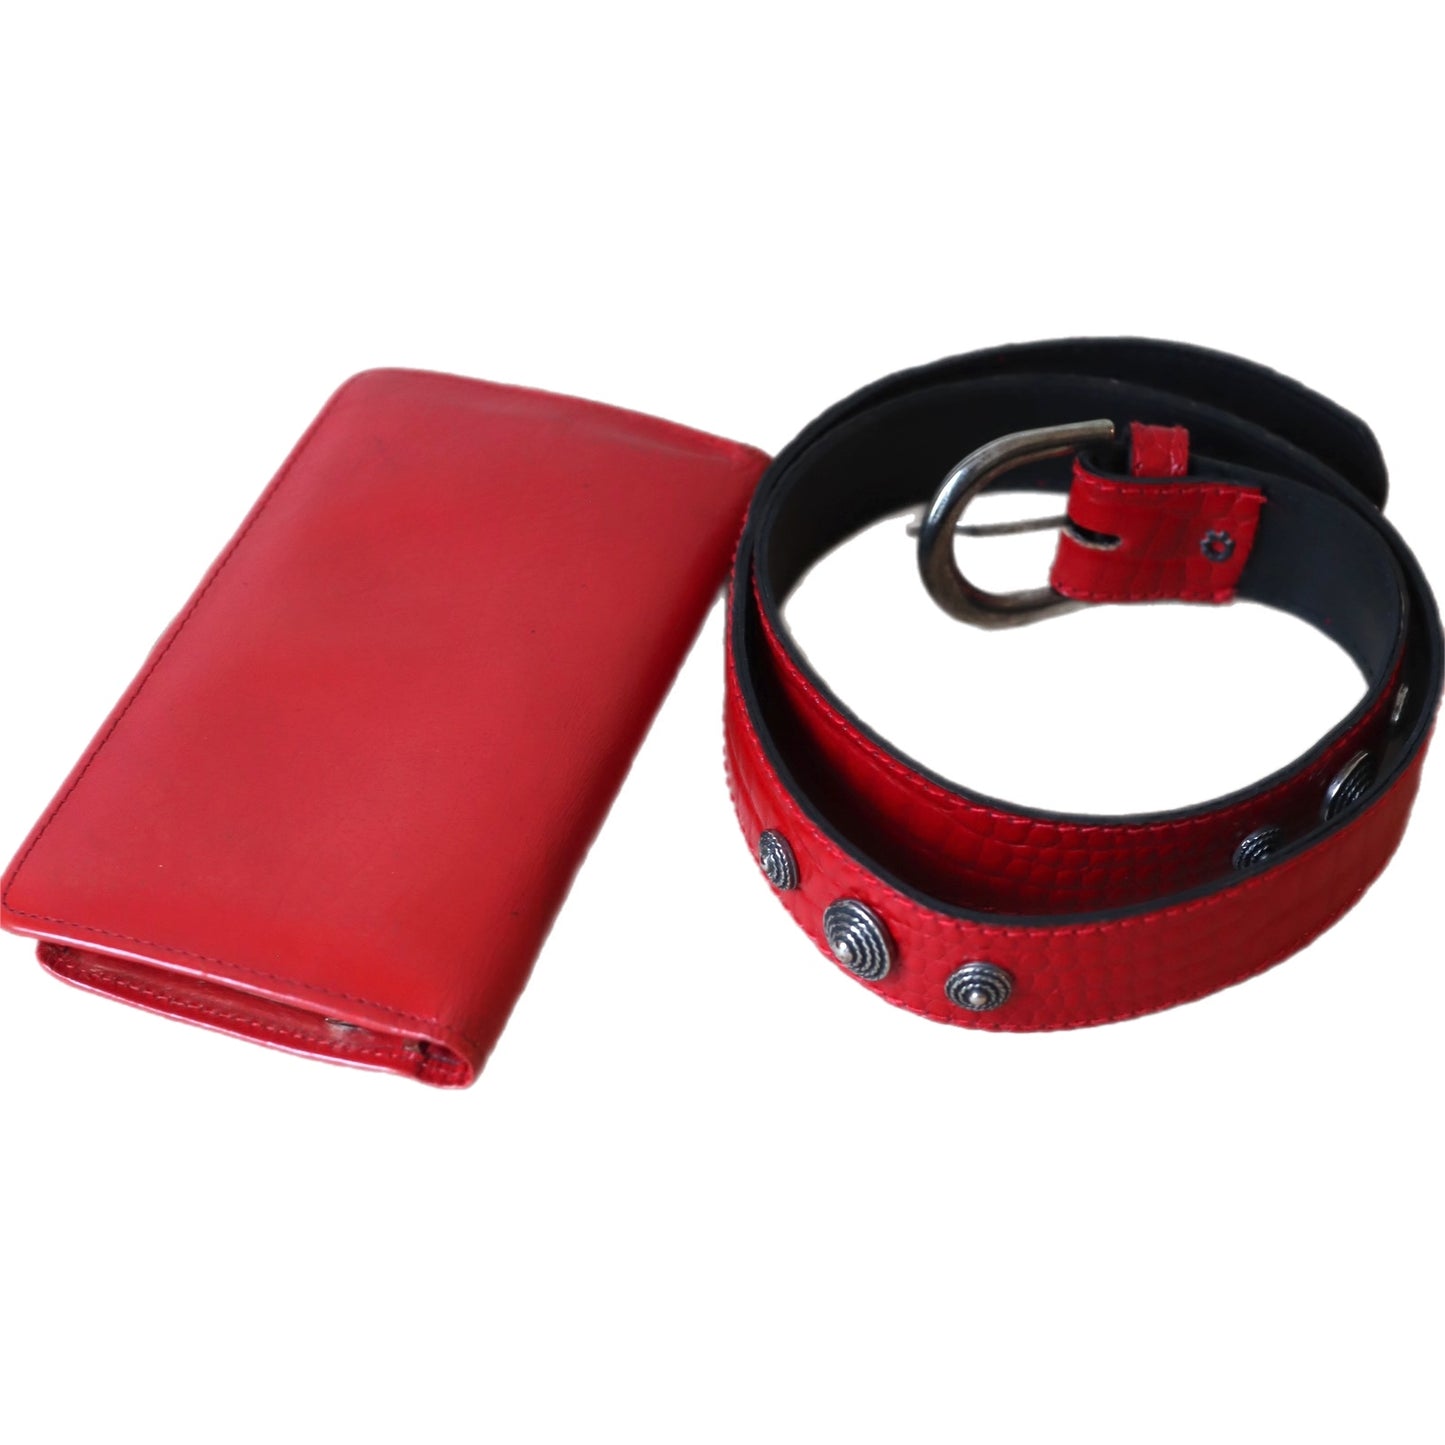 Belte og lommebok i rødt, secondhand